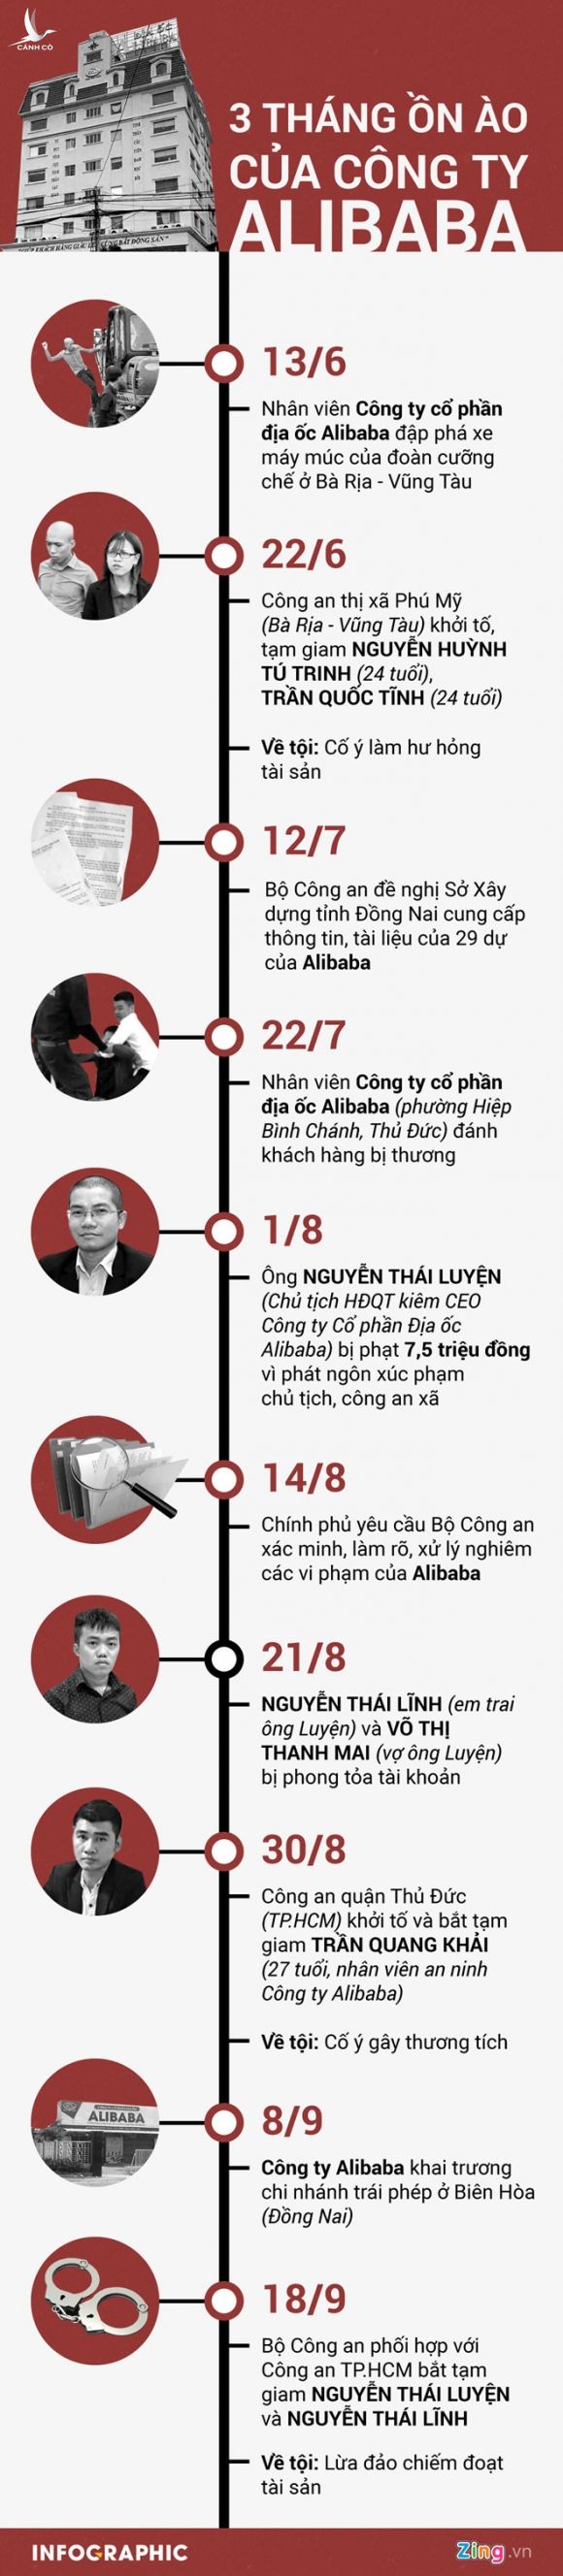 Chien Binh Thep lien quan gi den Cong ty Alibaba? hinh anh 3 